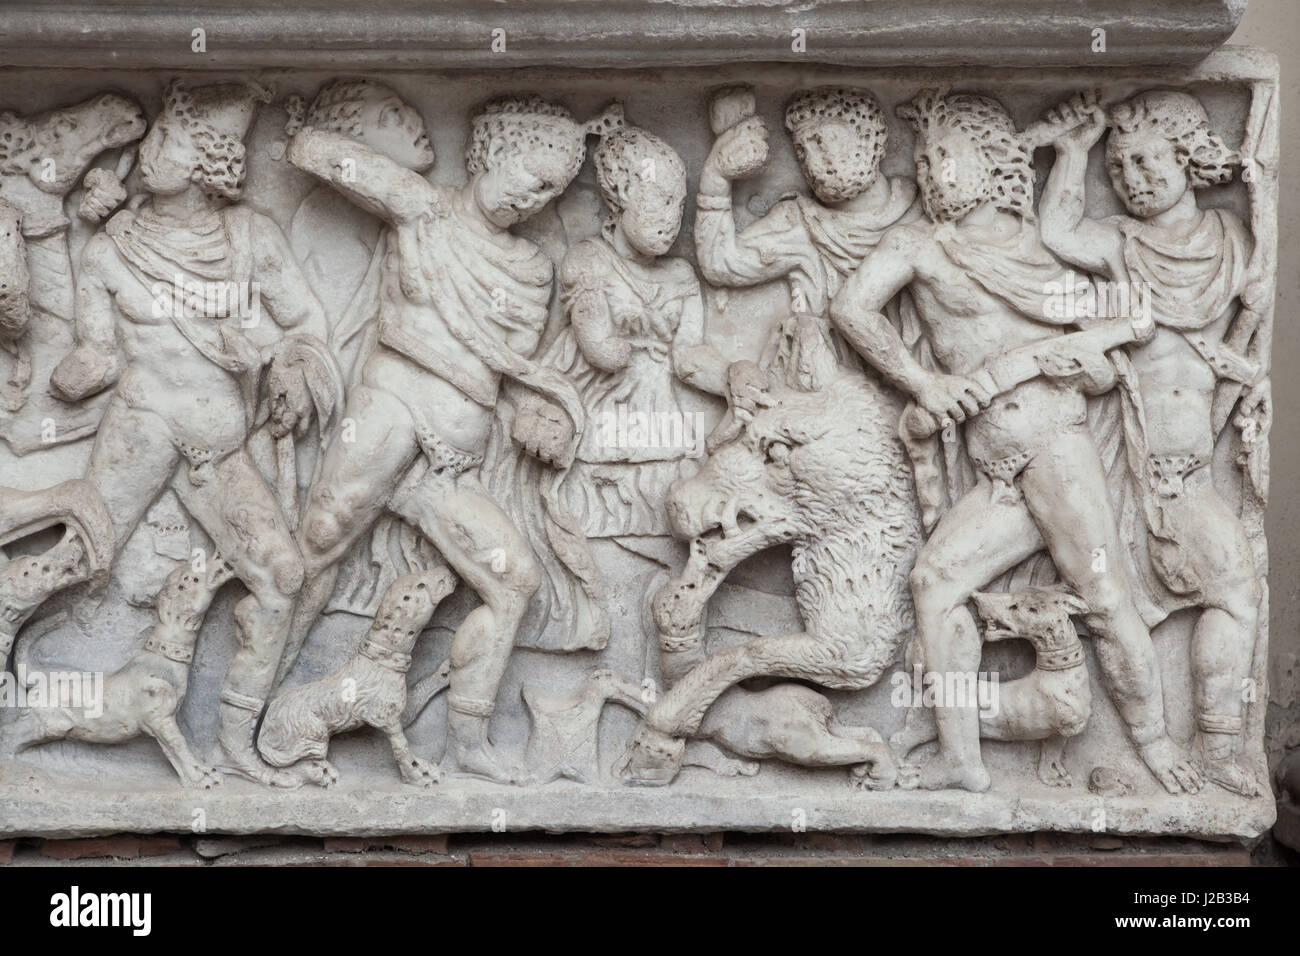 Meleagros Calydonian Eber erschlagen. Römischer Marmor-Sarkophag Wagen vom 3. Jahrhundert n. Chr. auf dem Display im Hof der Kathedrale von Salerno in Salerno, Kampanien, Italien. Stockfoto